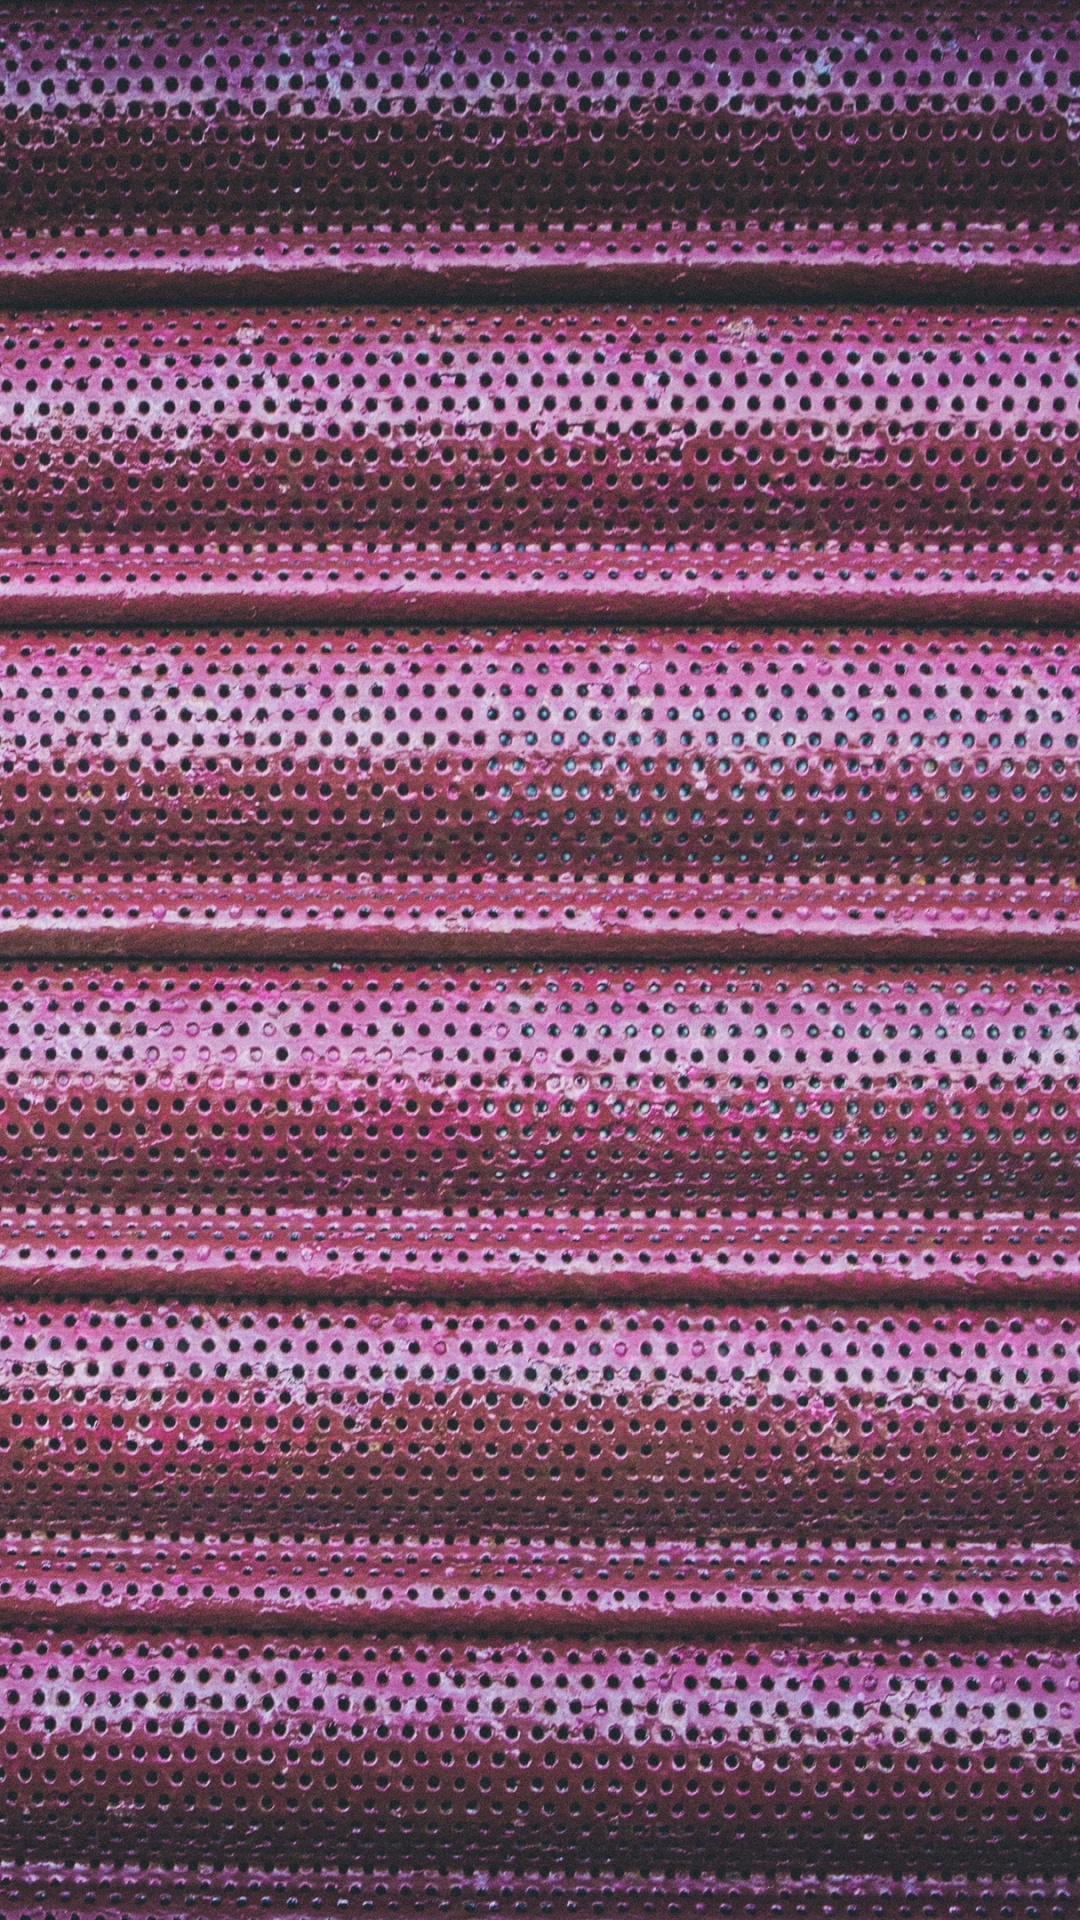 Textil de Rayas Moradas y Negras. Wallpaper in 1080x1920 Resolution